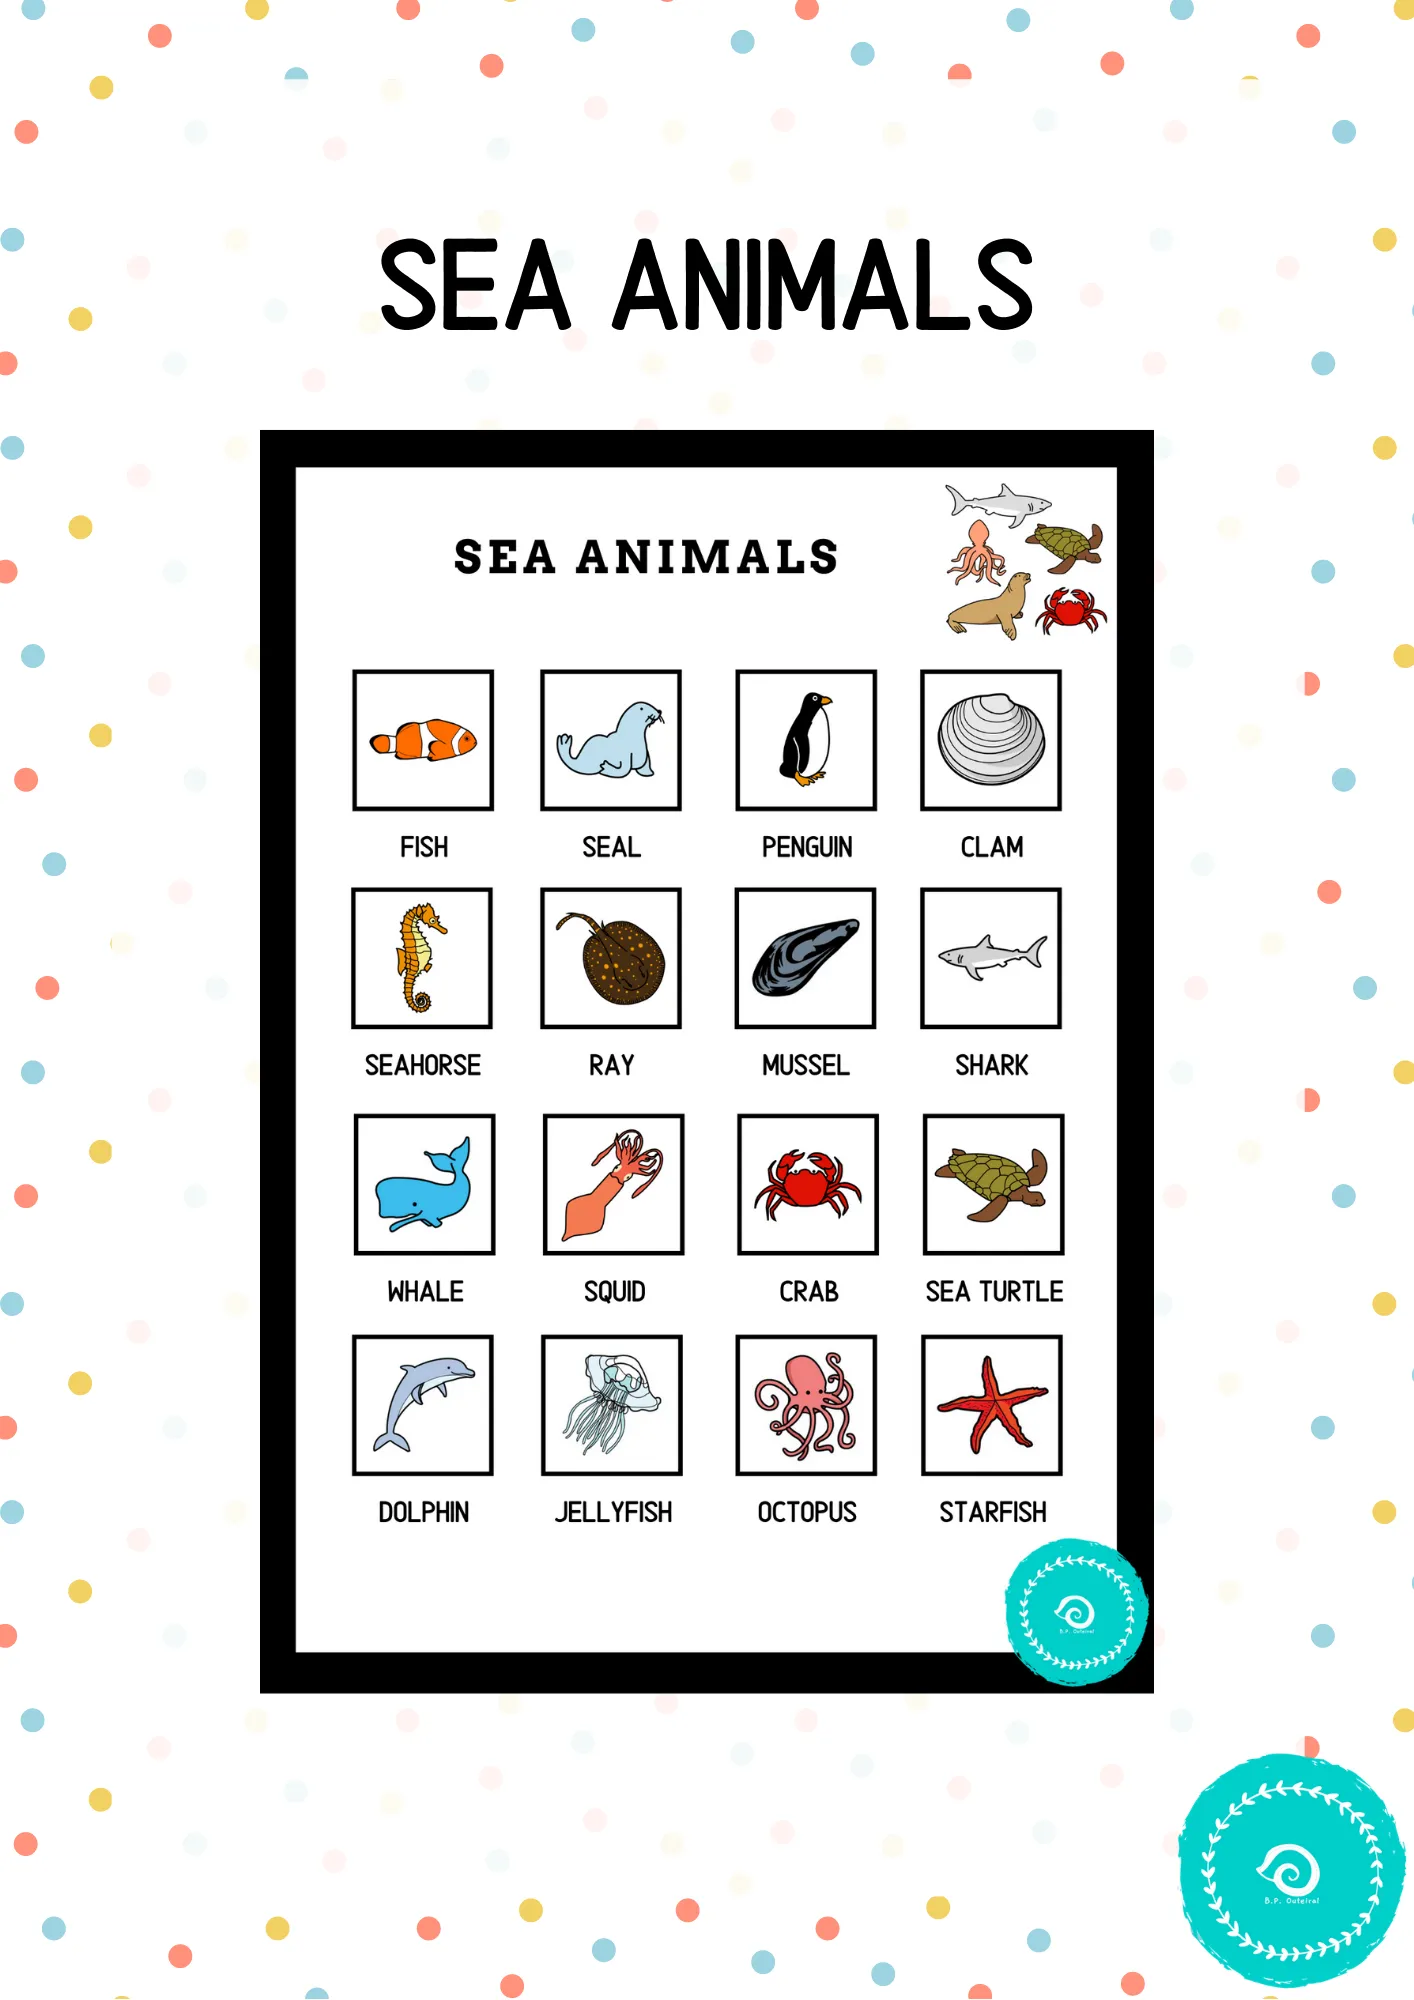 Sea animals (pictos)